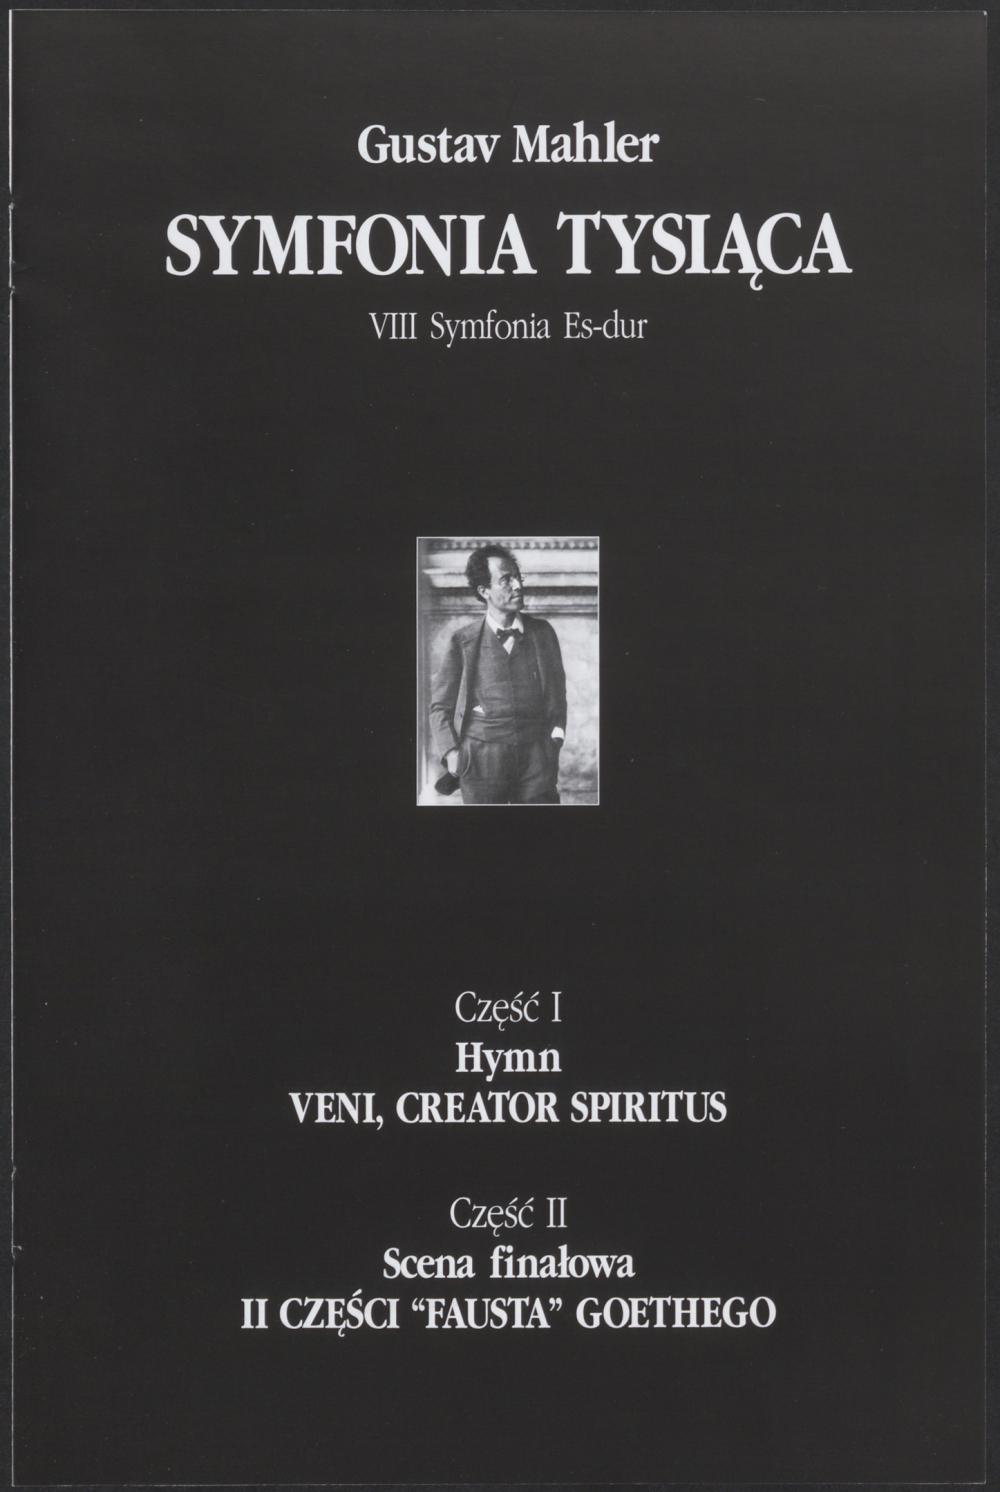 Program. „Symfonia tysiąca” Gustav Mahler 1996-11-10, 1996-11-12